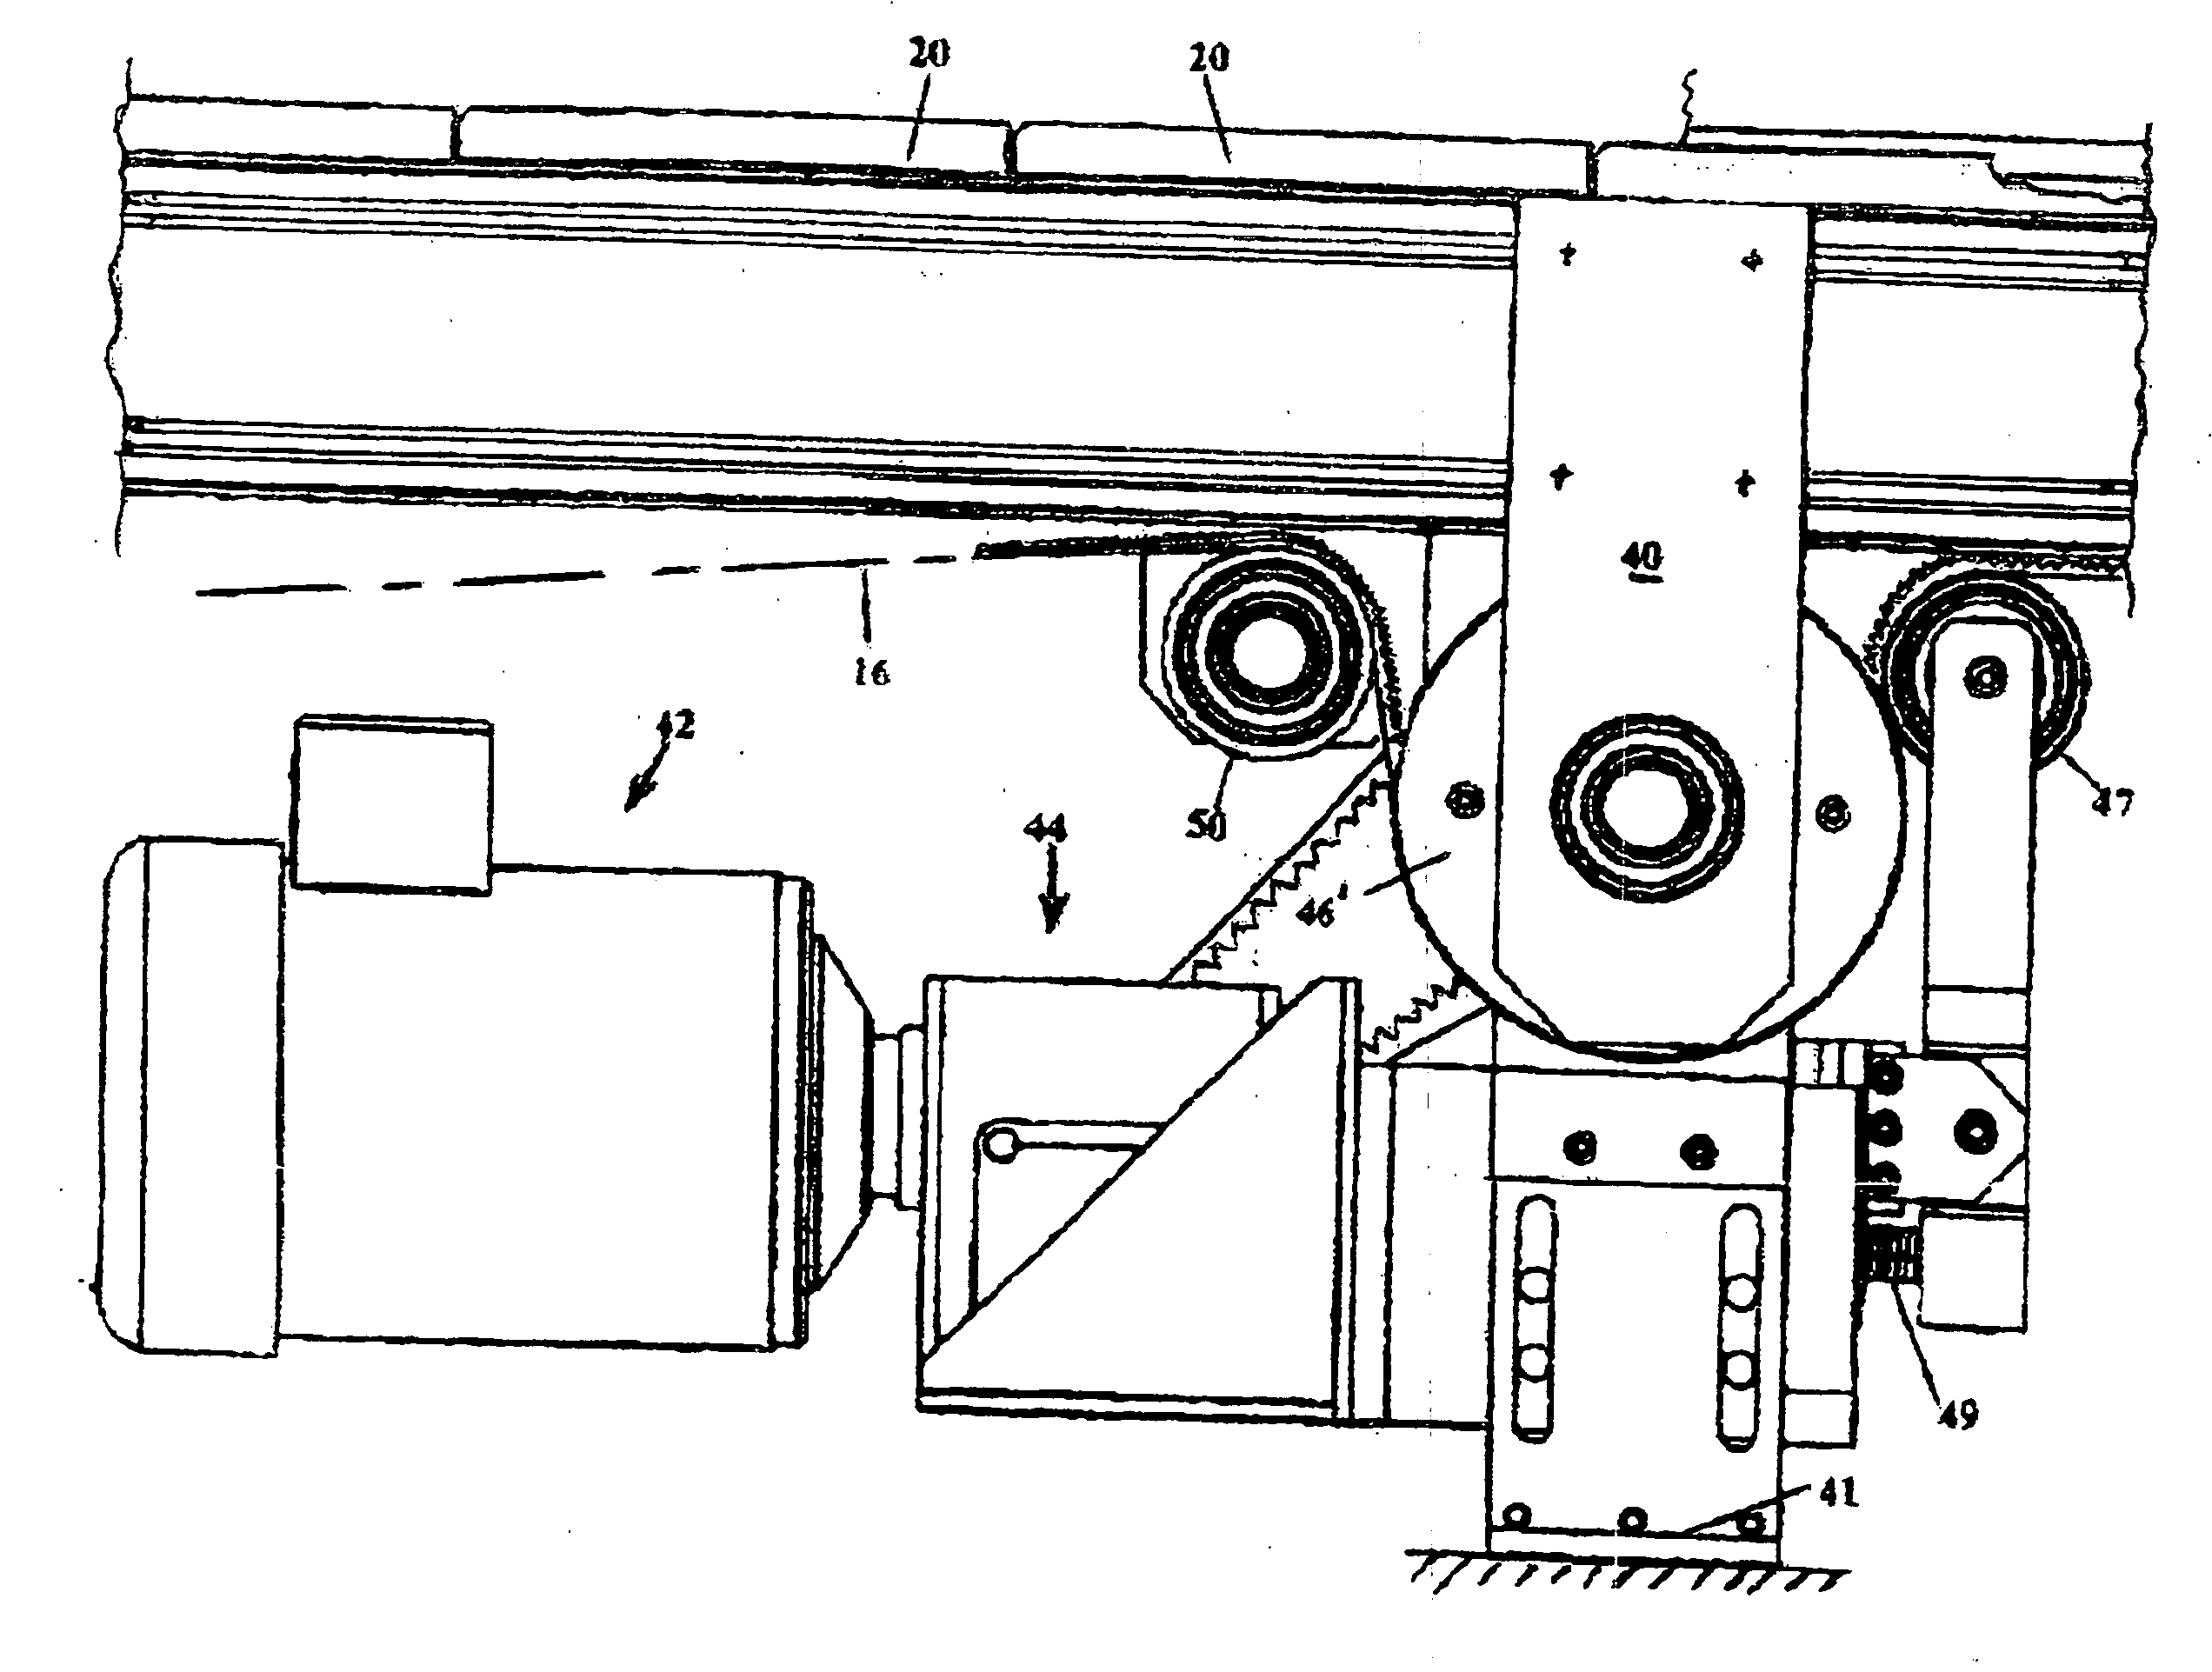 Vacuum belt conveyor system